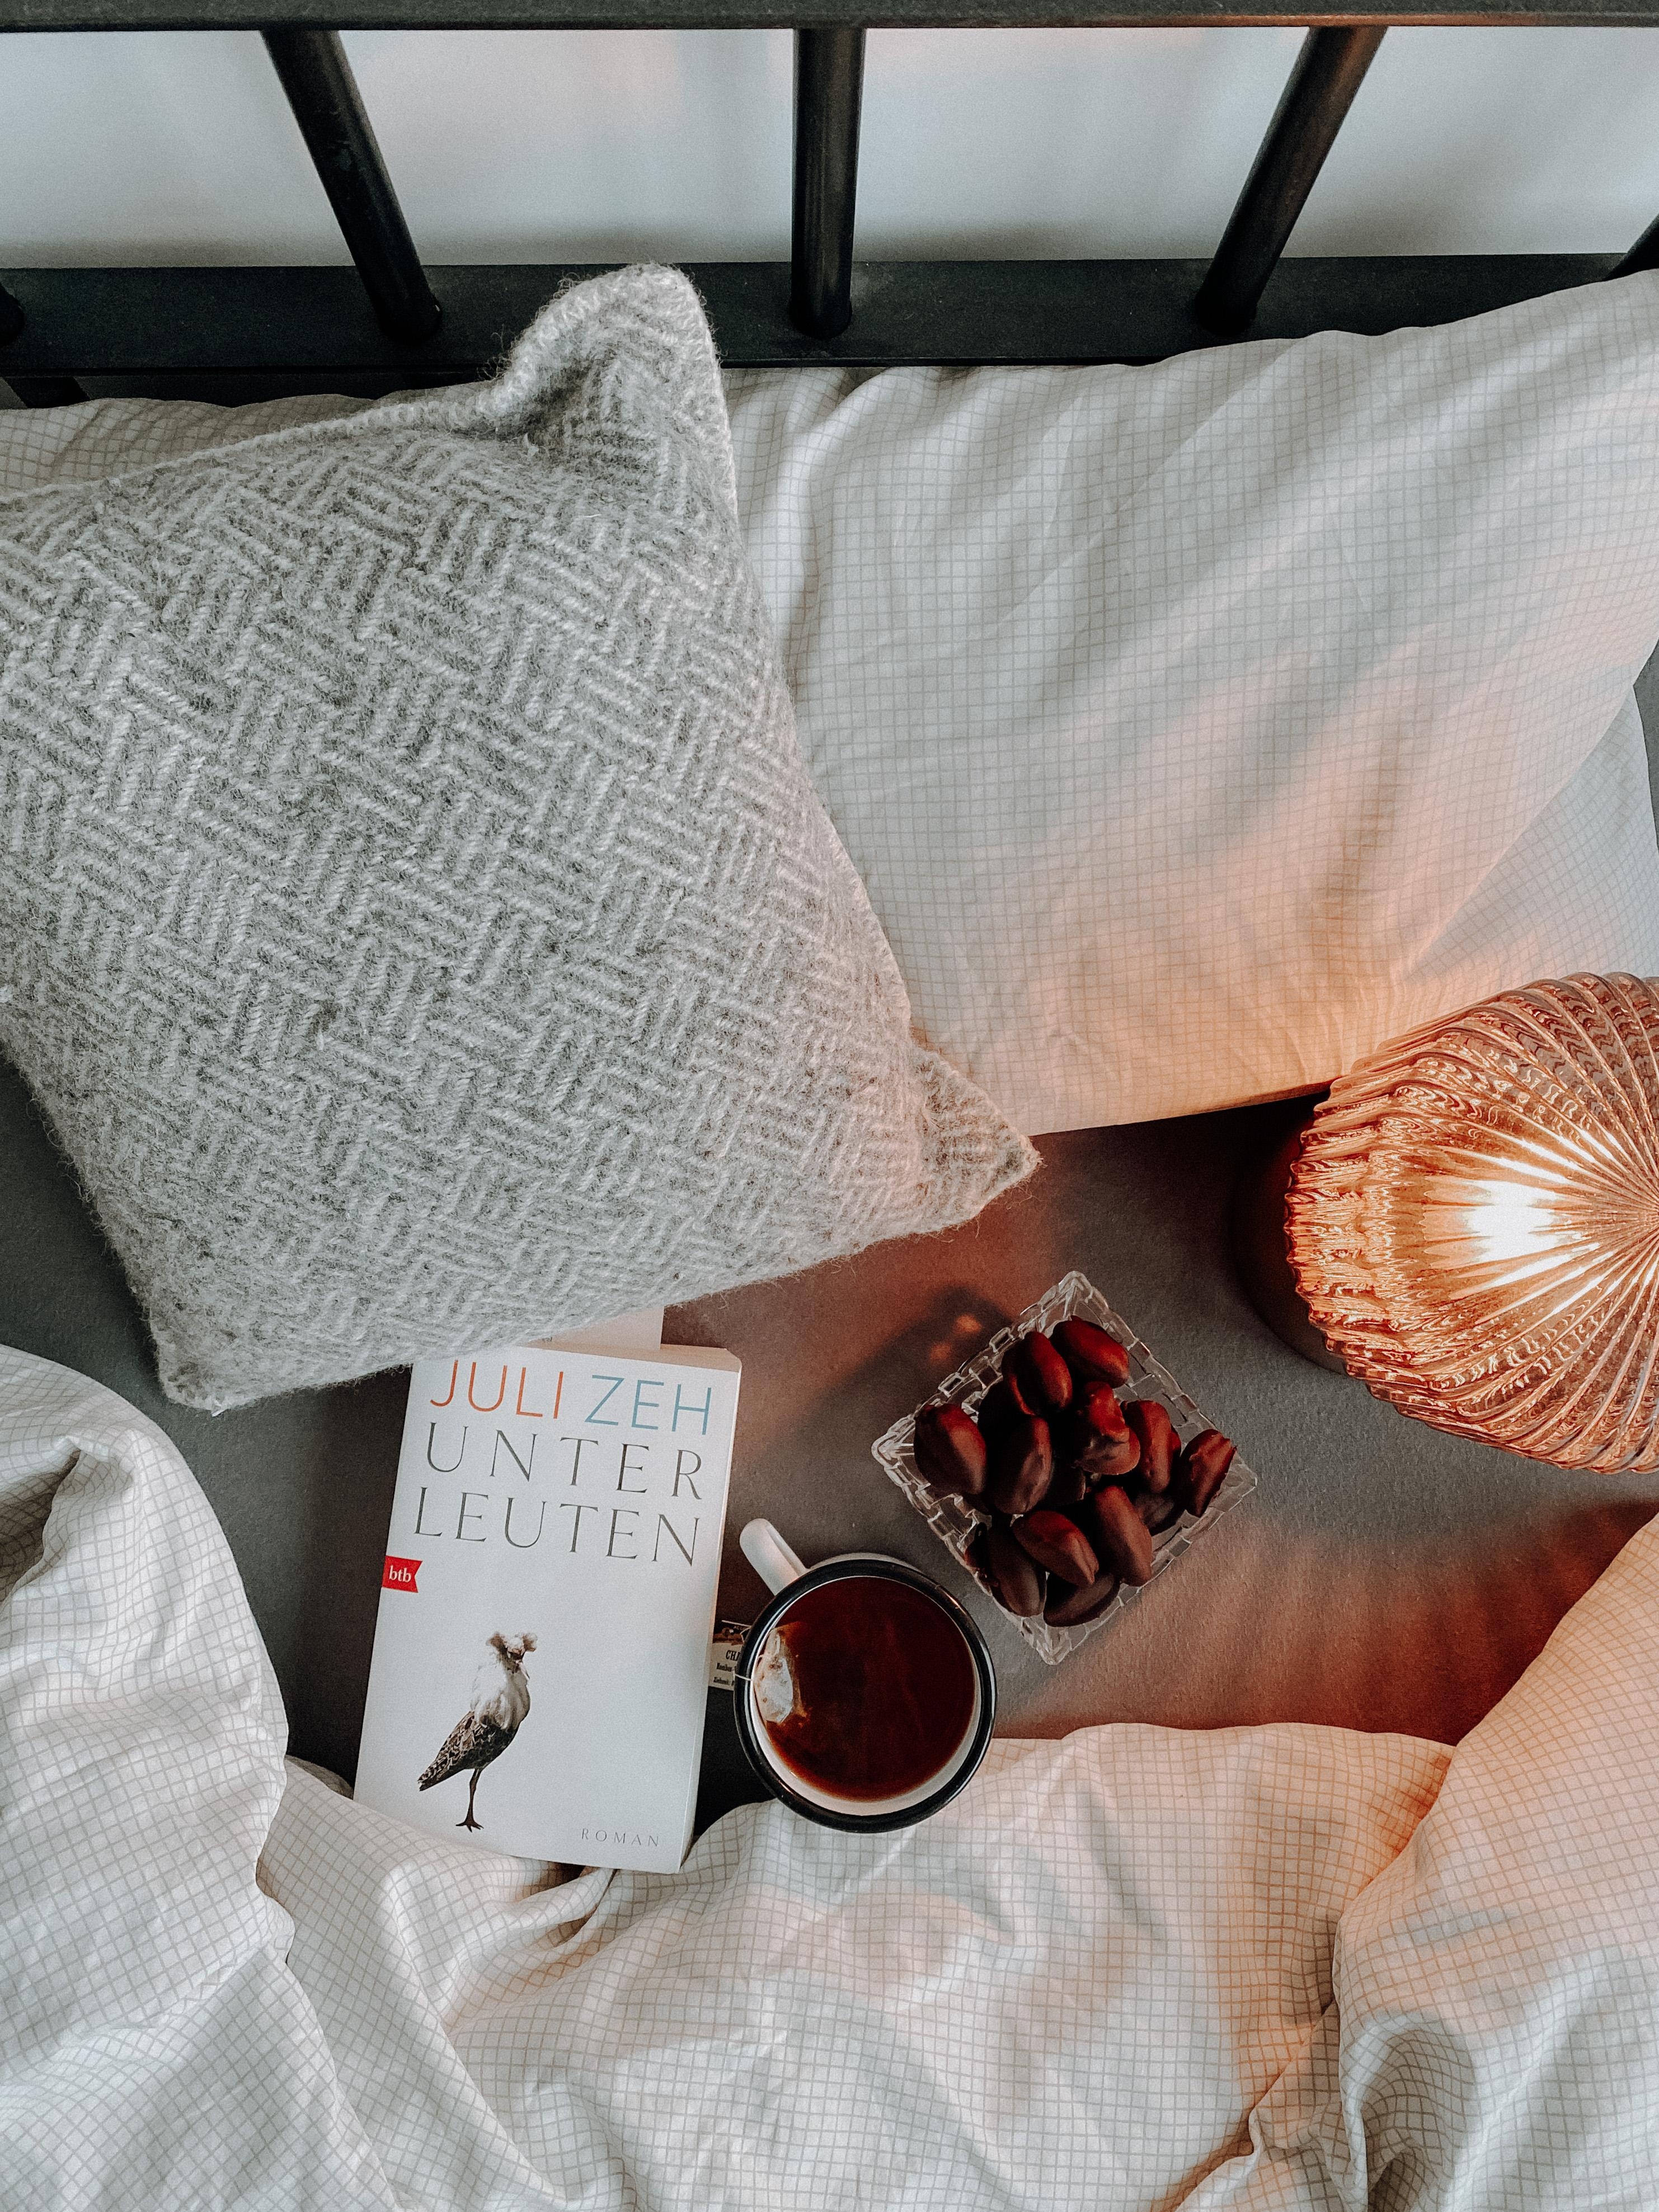 #bedroom und #books - Was will man mehr? 